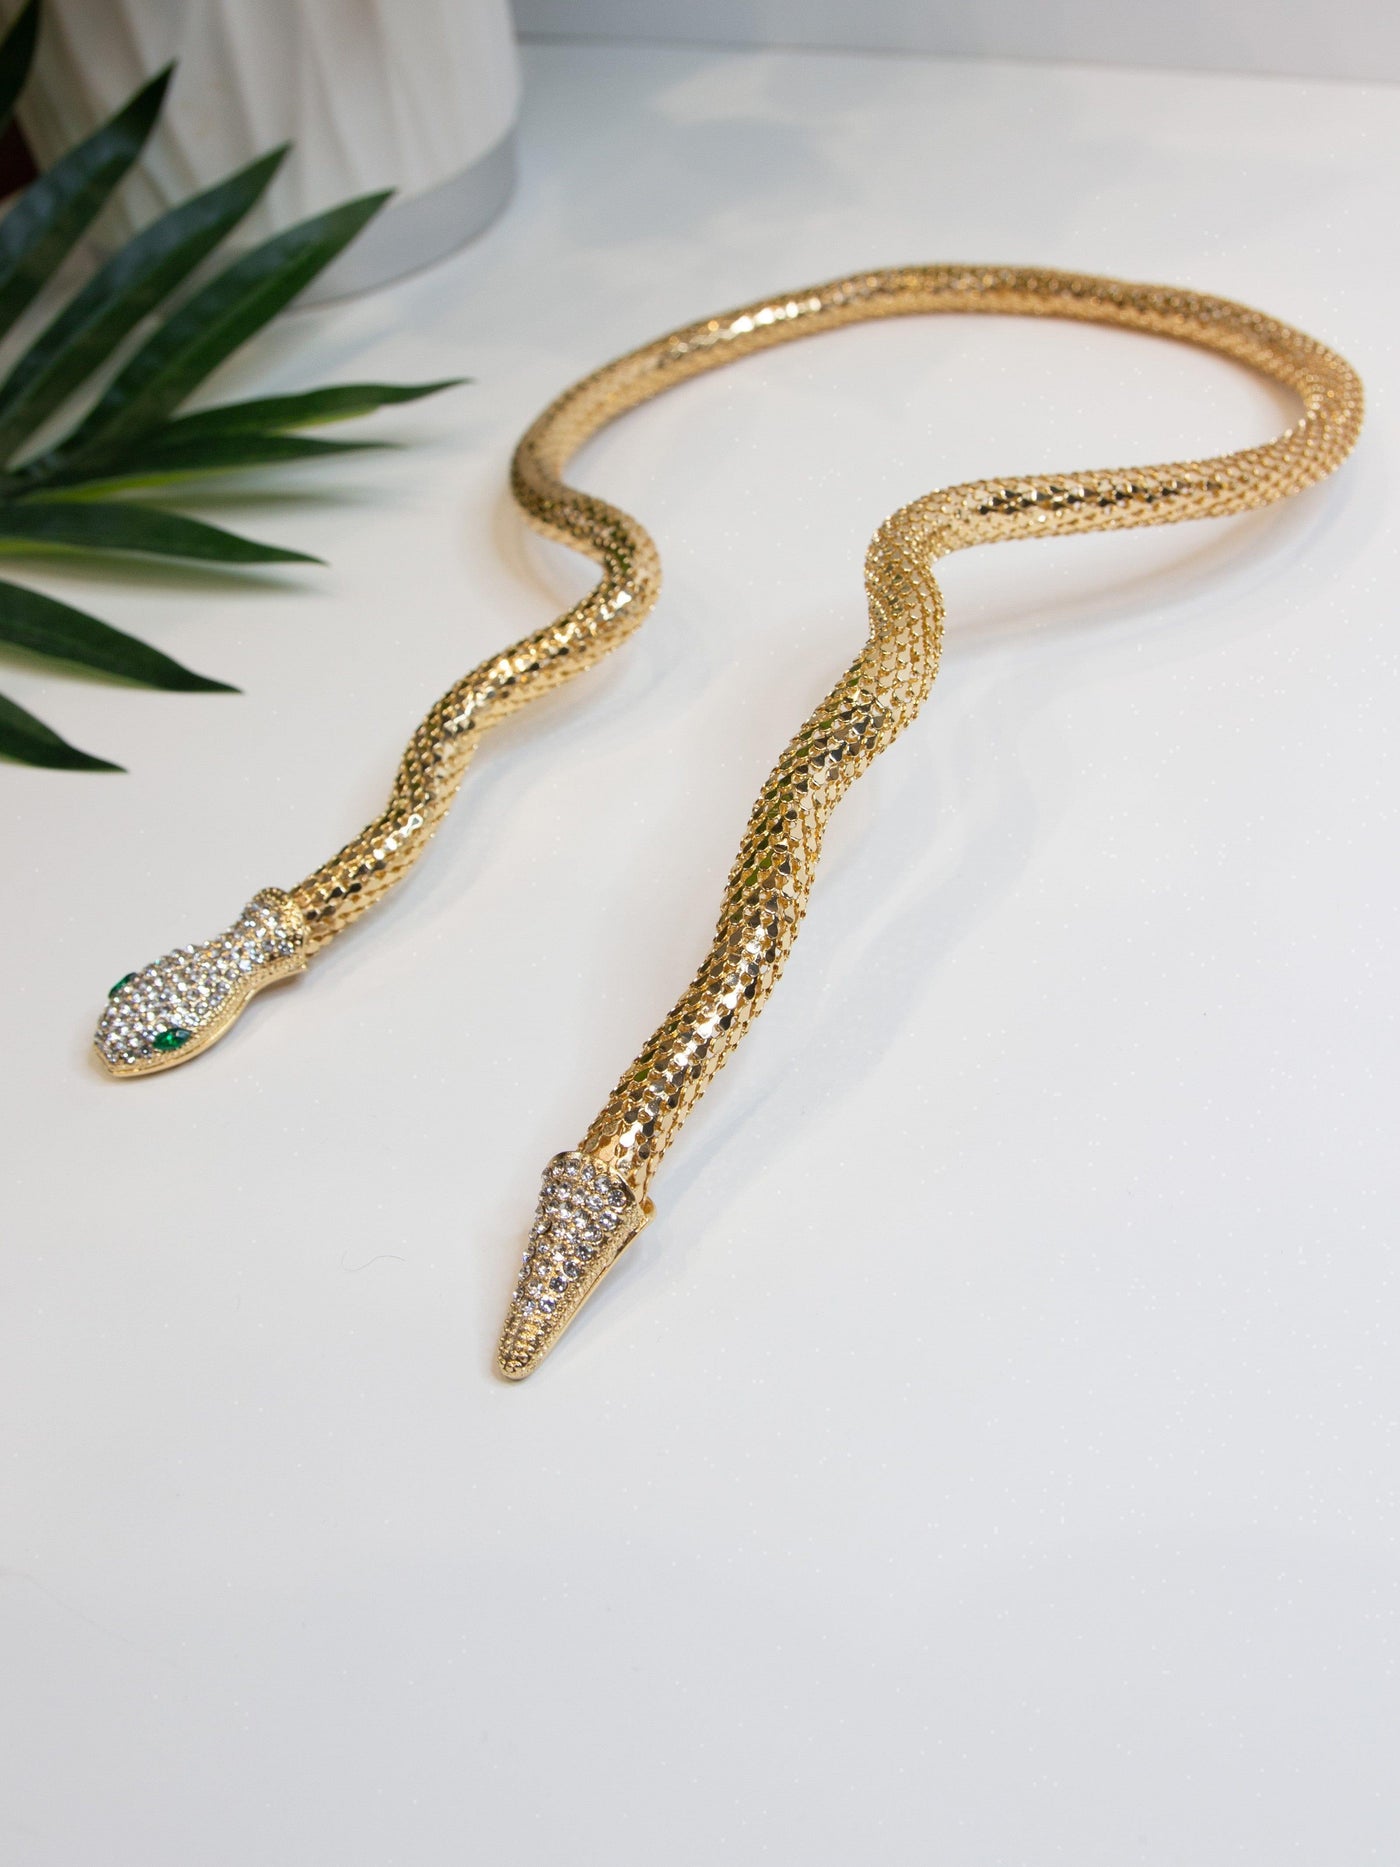 Unique Snake Neck Piece - Statement Piece NY final sale, Statement Accessories Necklaces